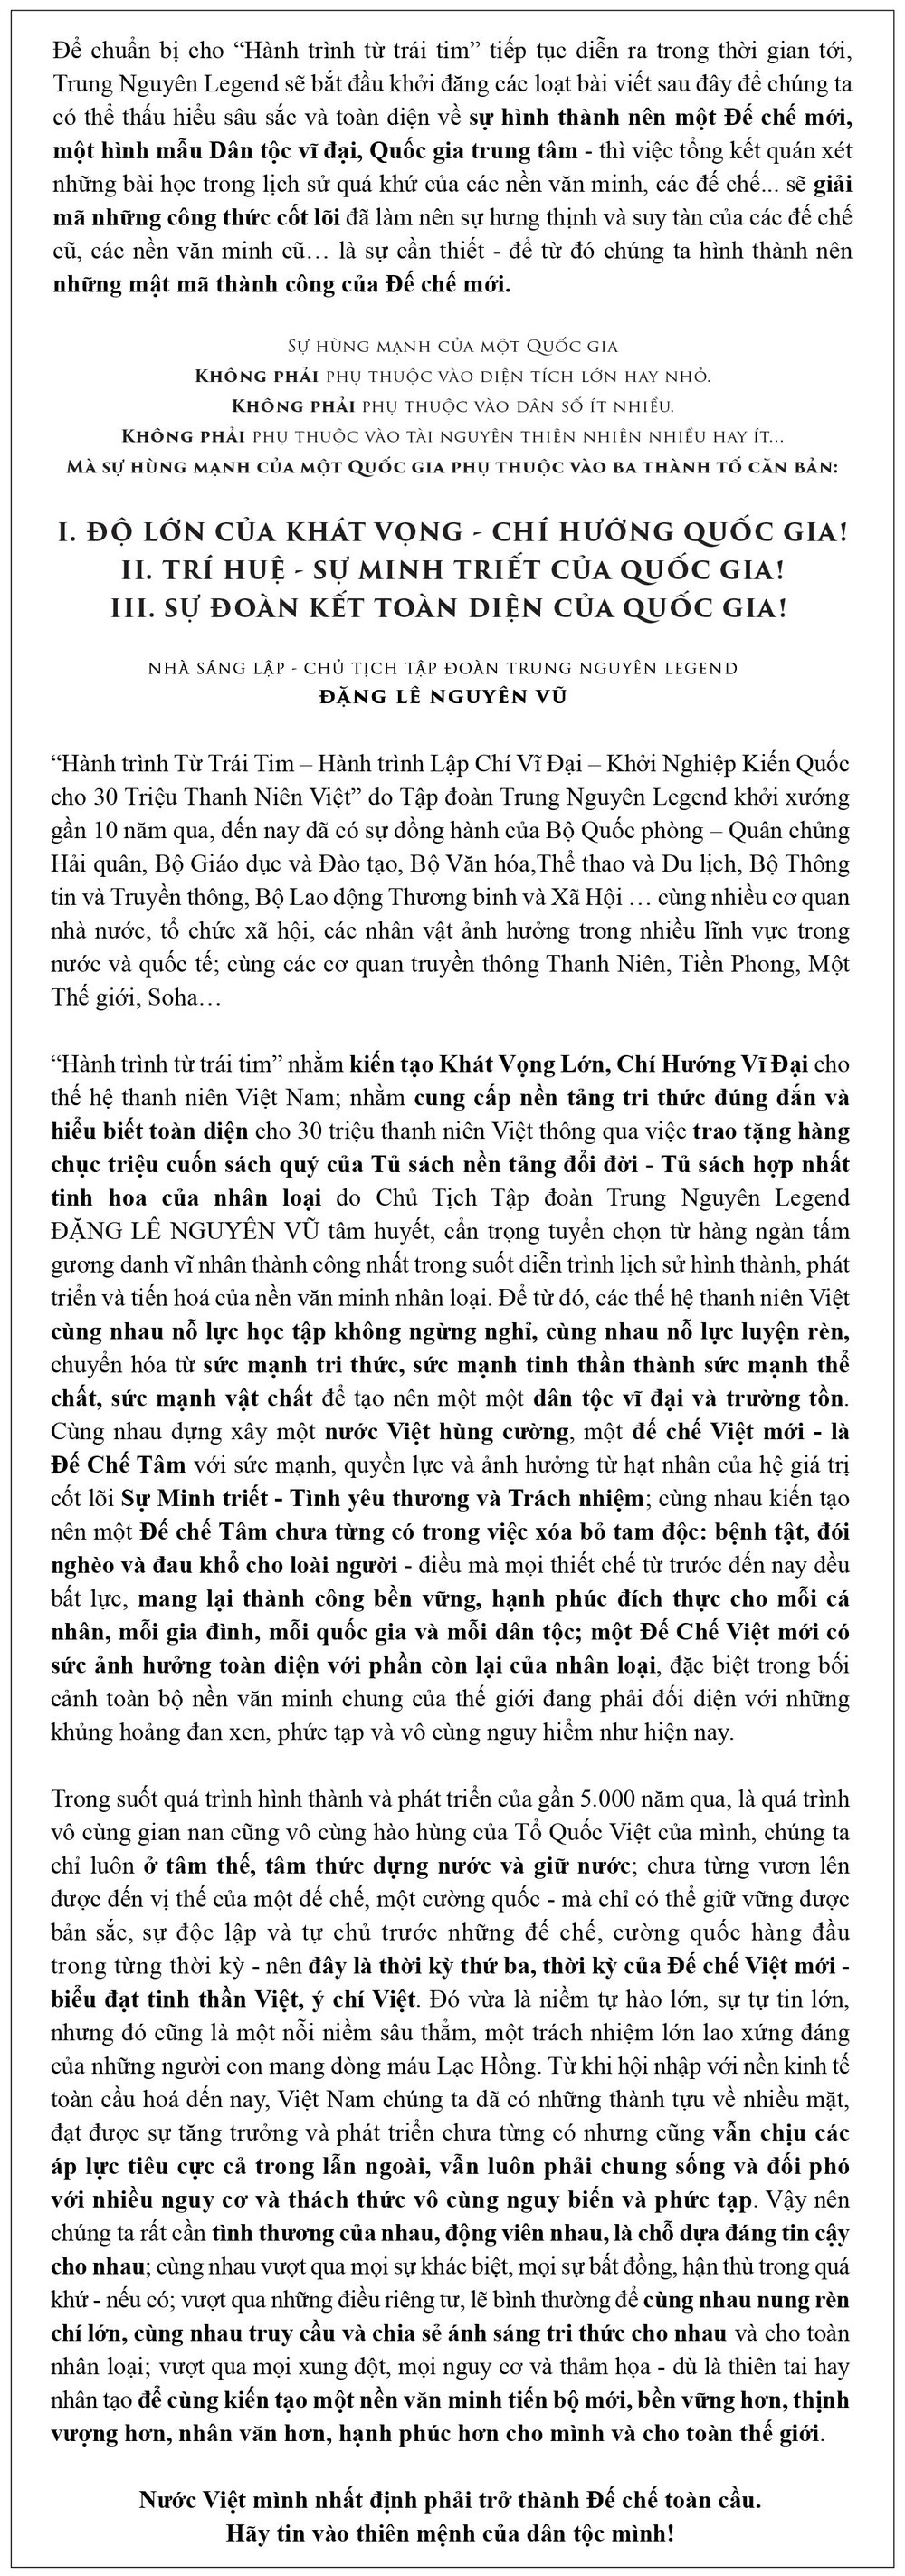 Thập Nhi Binh Thư - Binh thư số 9: Đường Thái Tông - Lý Vệ Công Vấn Đối - Ảnh 1.